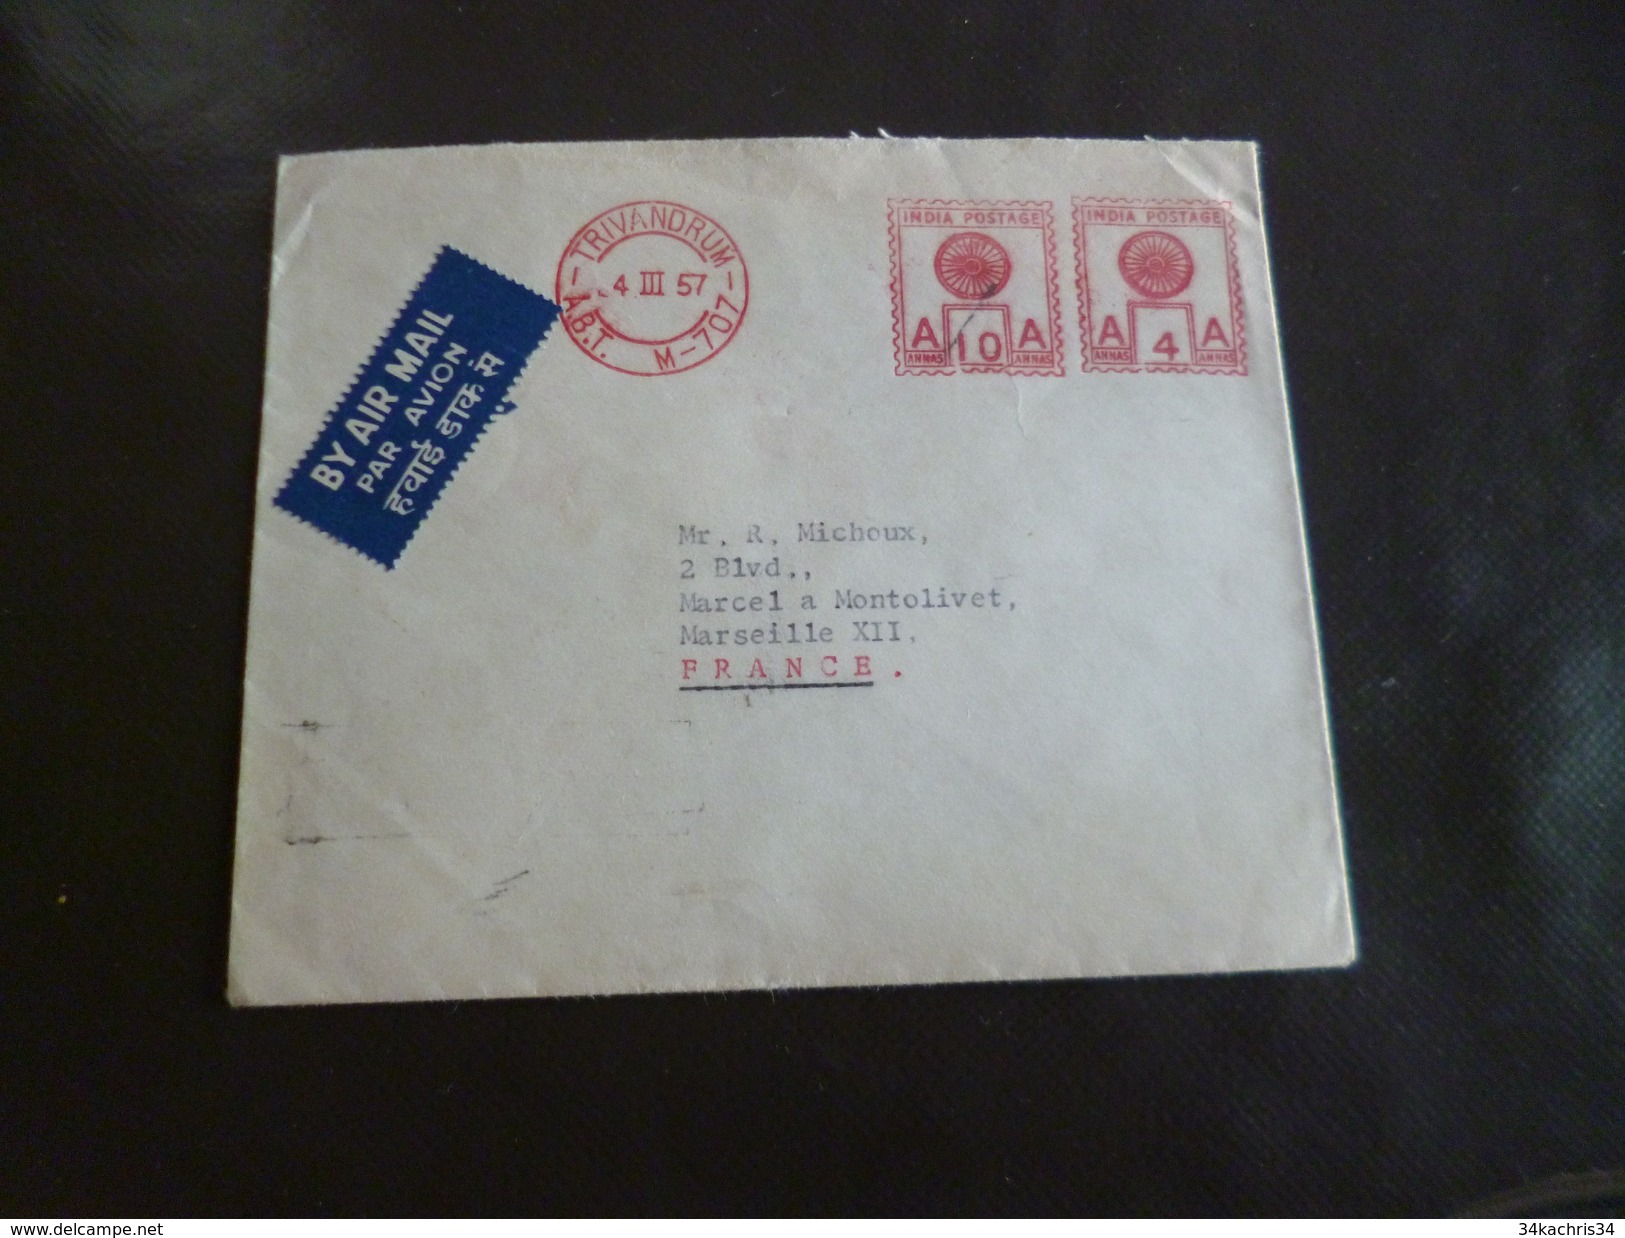 Lettre Inde India  EMA Rouge Par Avion Via Air Mail 4/03/1957 Trivandrum Pour Marseille - Storia Postale